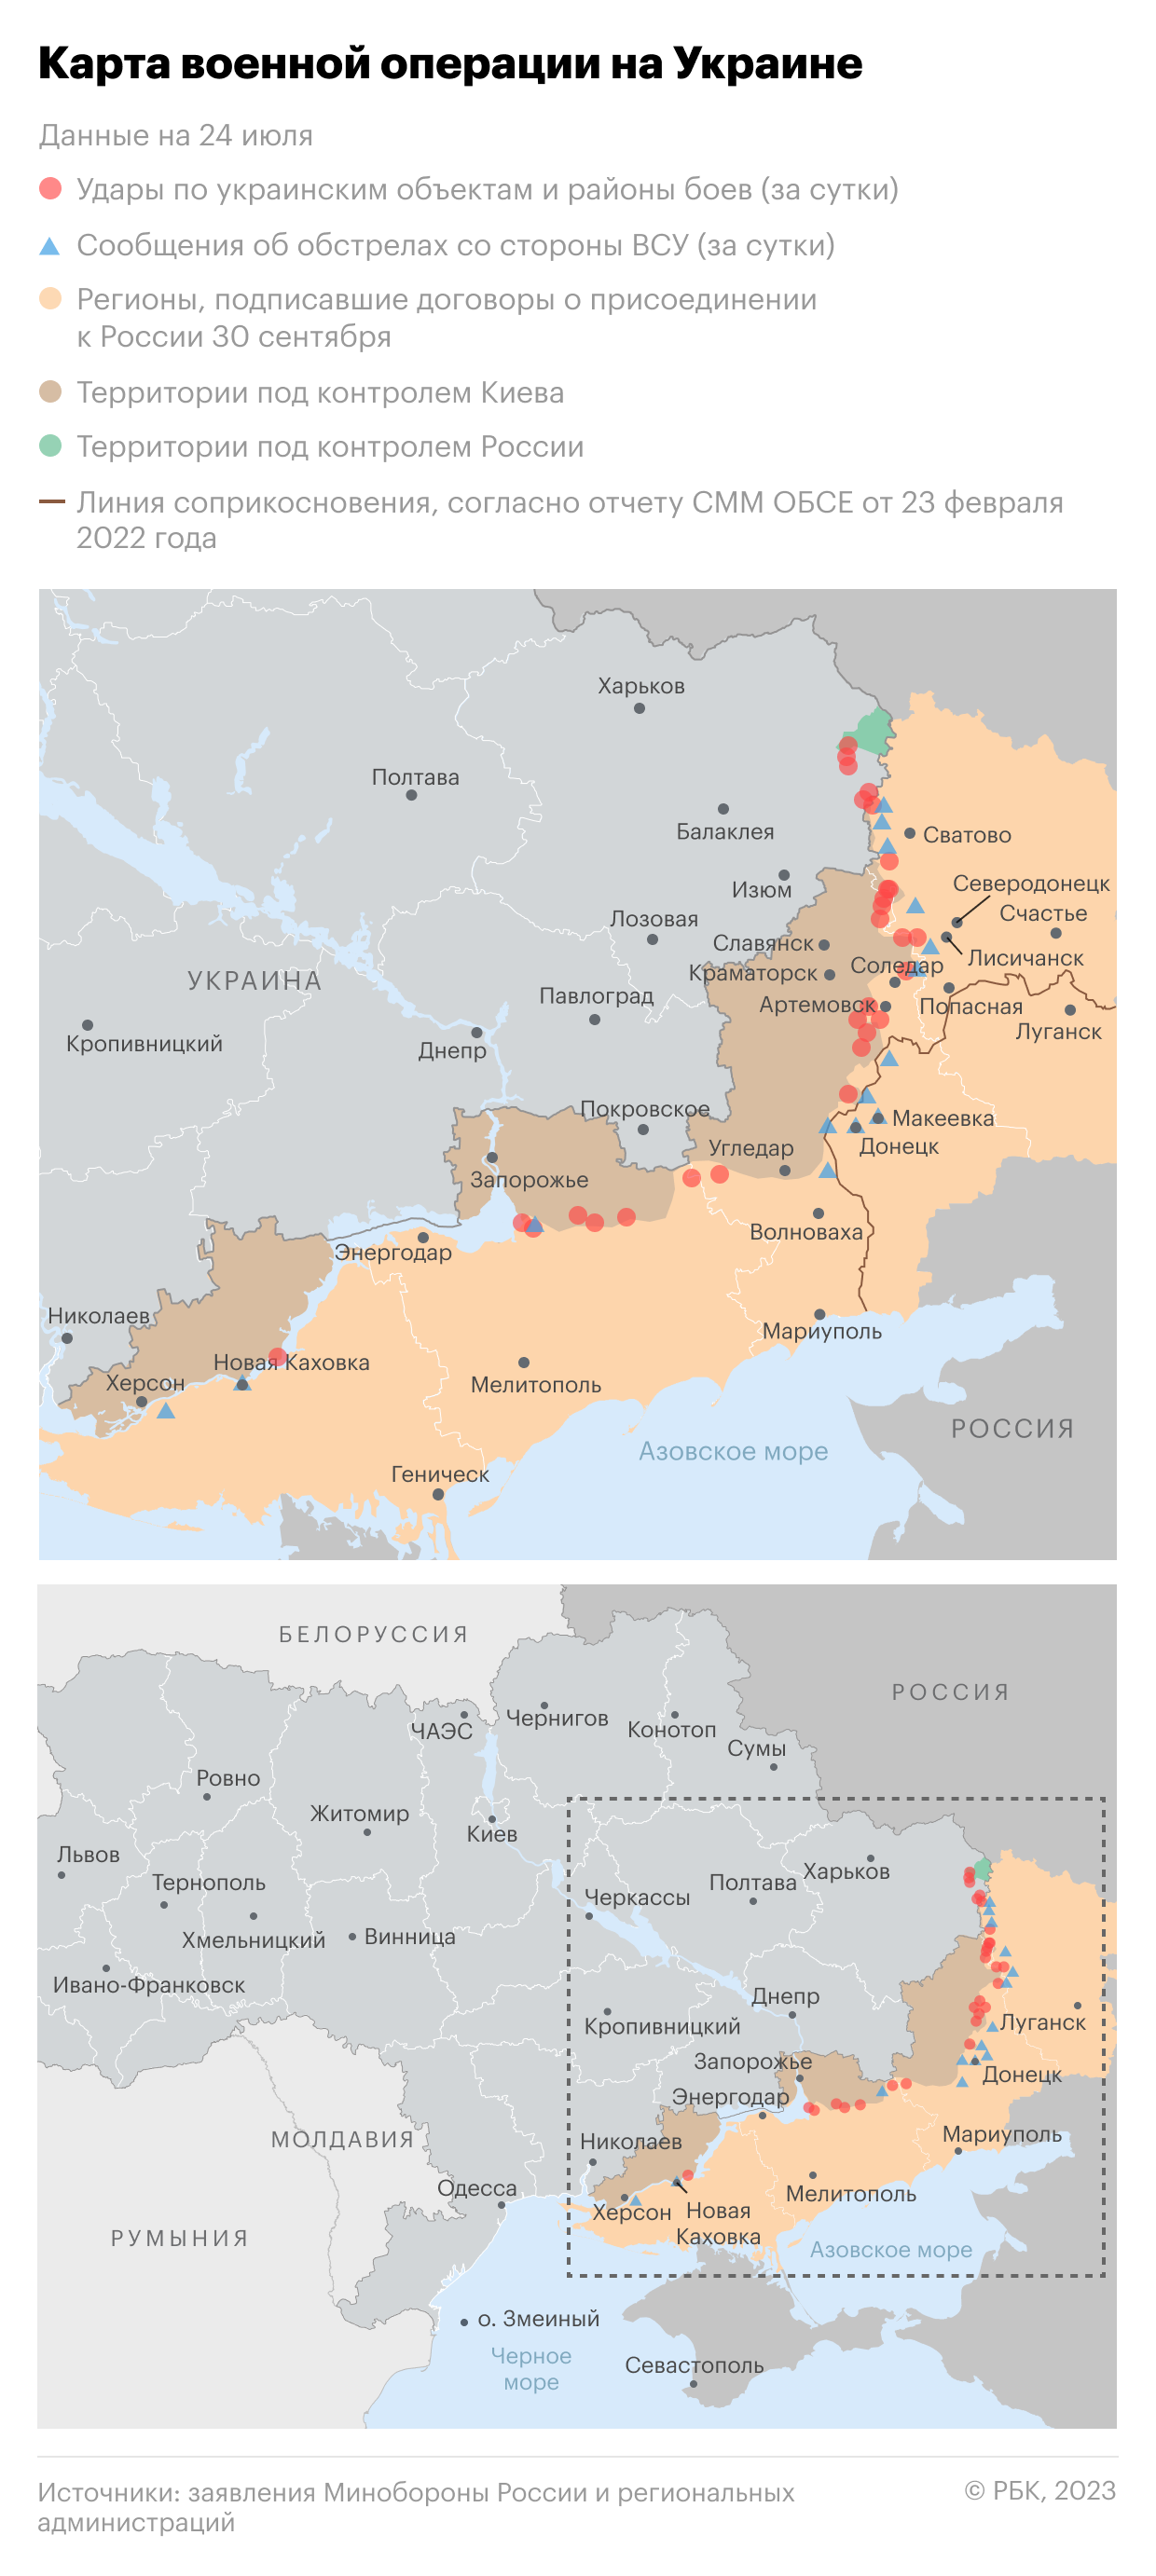 Военная операция на Украине. Карта на 24 июля"/>













